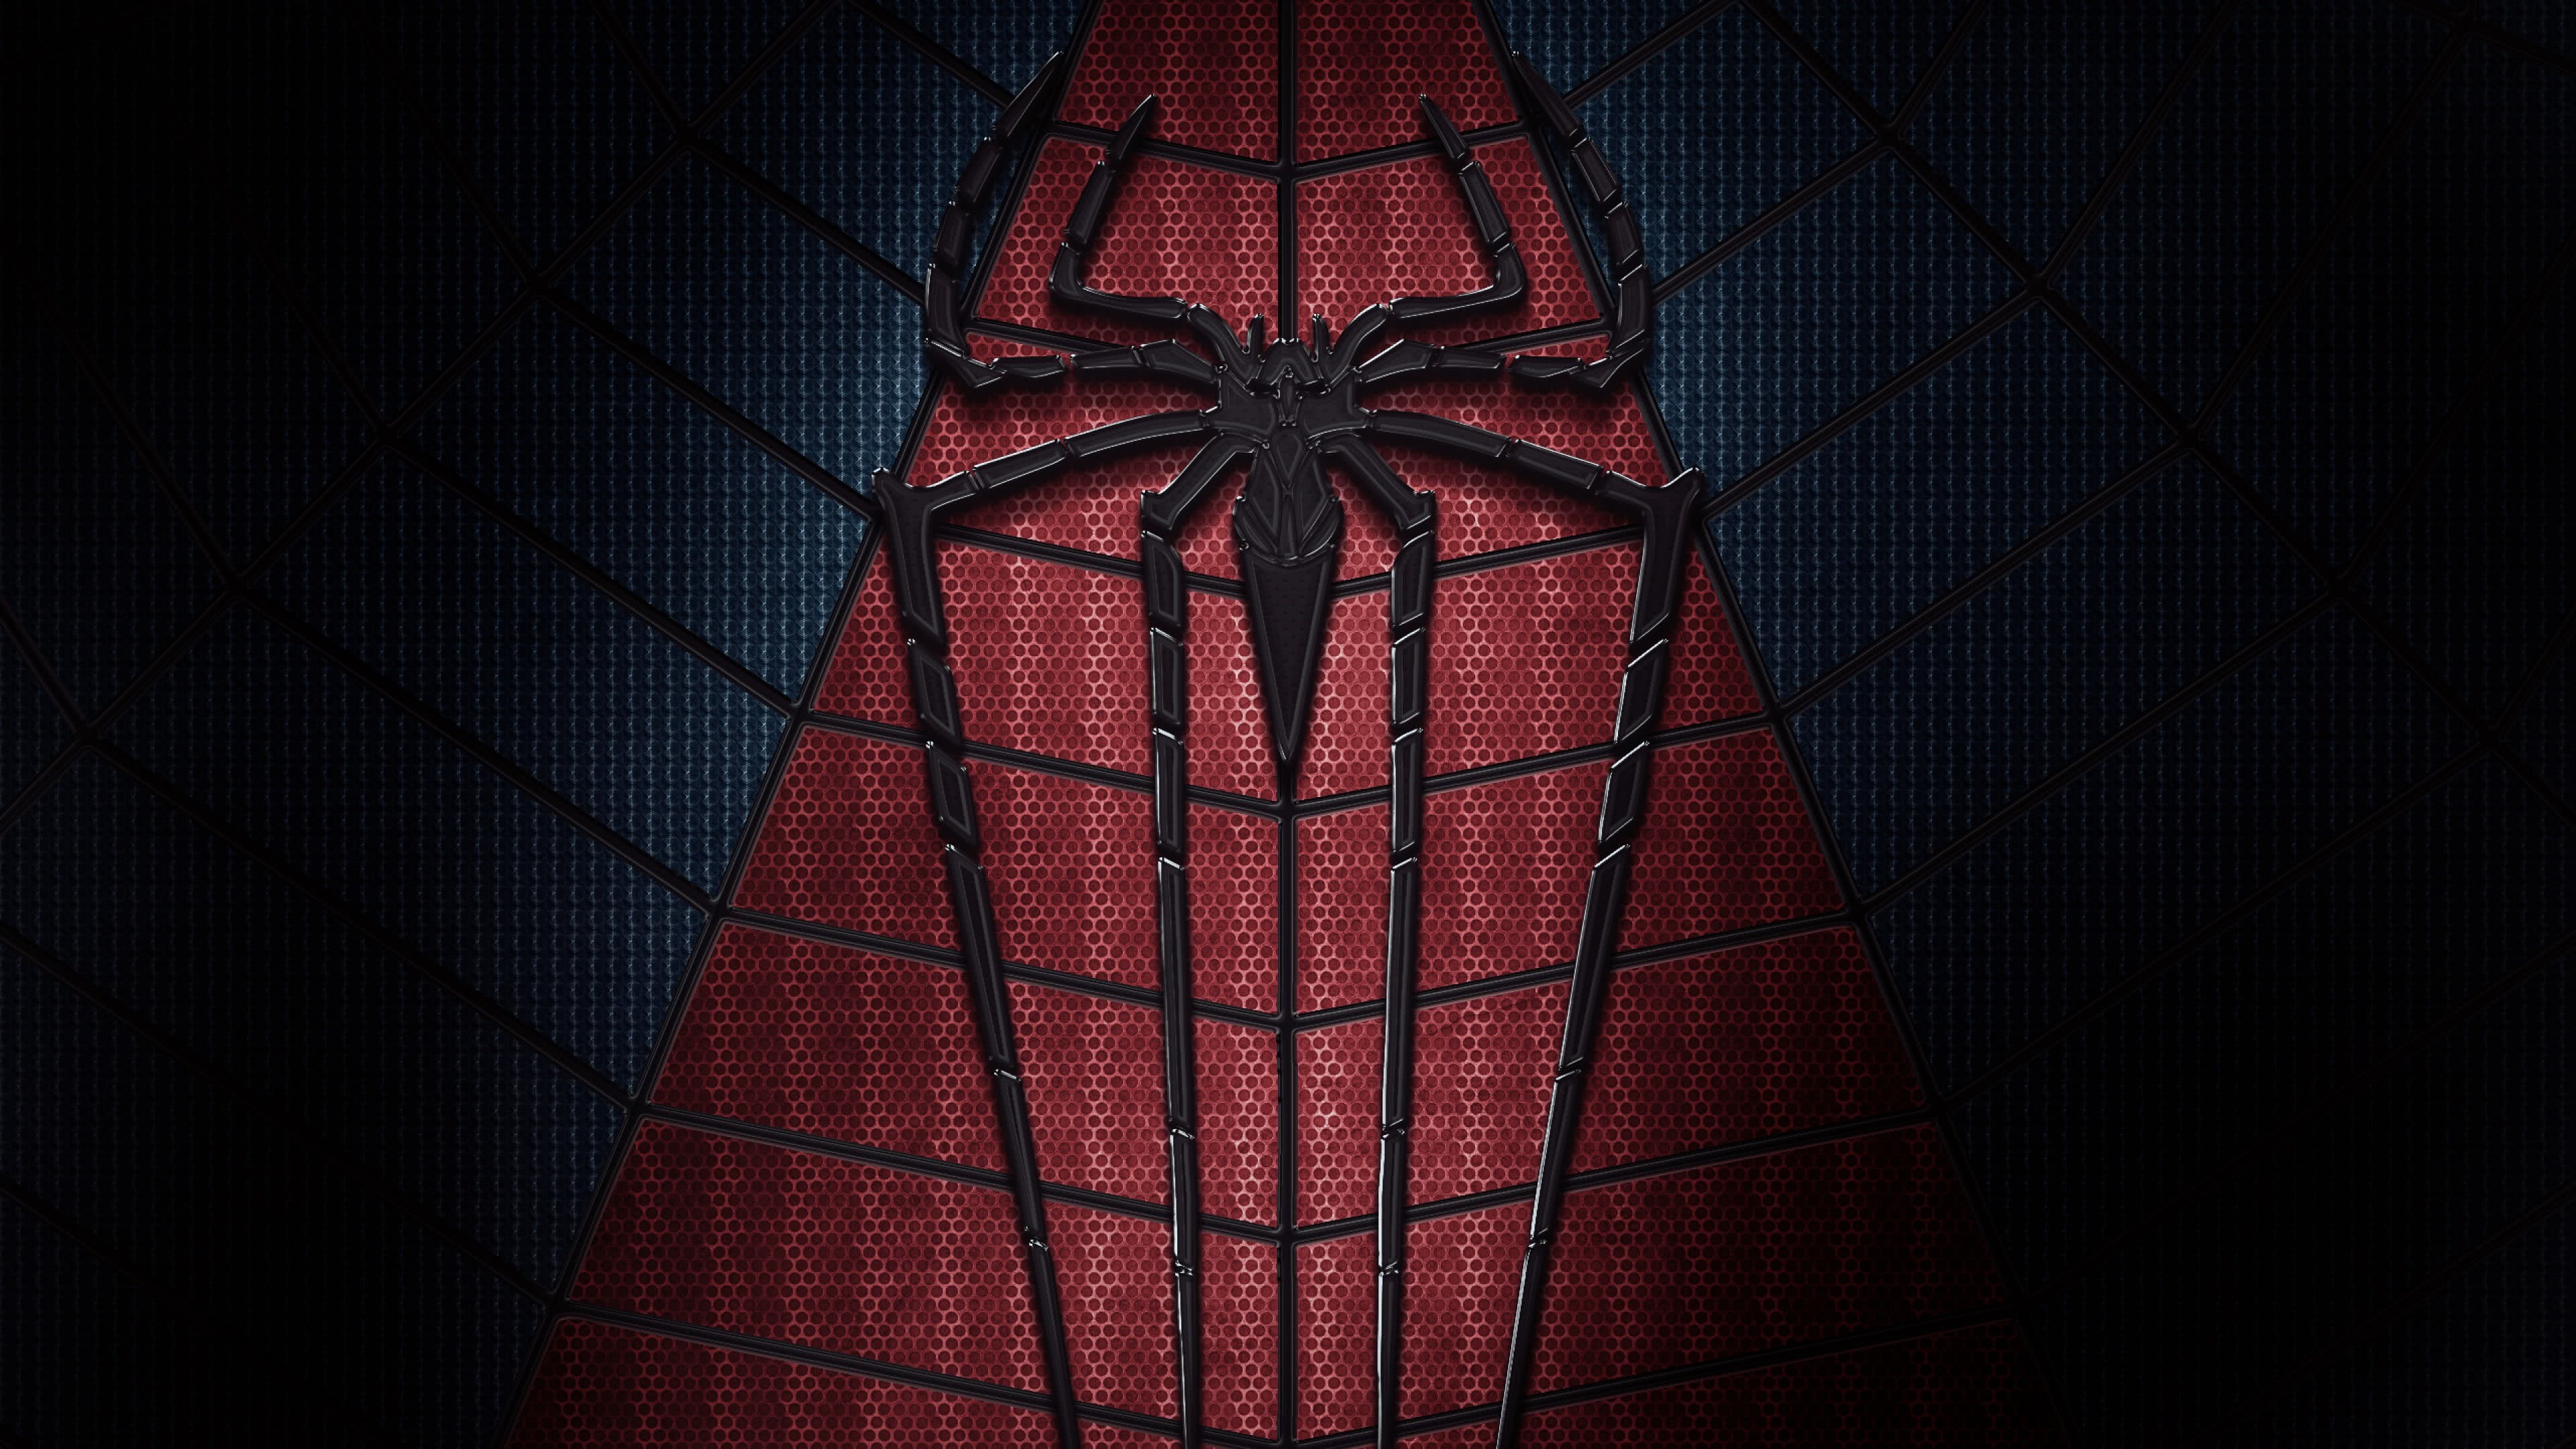 3840x2160, The Amazing Spider Man Spider Uhd 4k Wallpaper - Spiderman Logo  Wallpaper 4k - 3840x2160 Wallpaper 